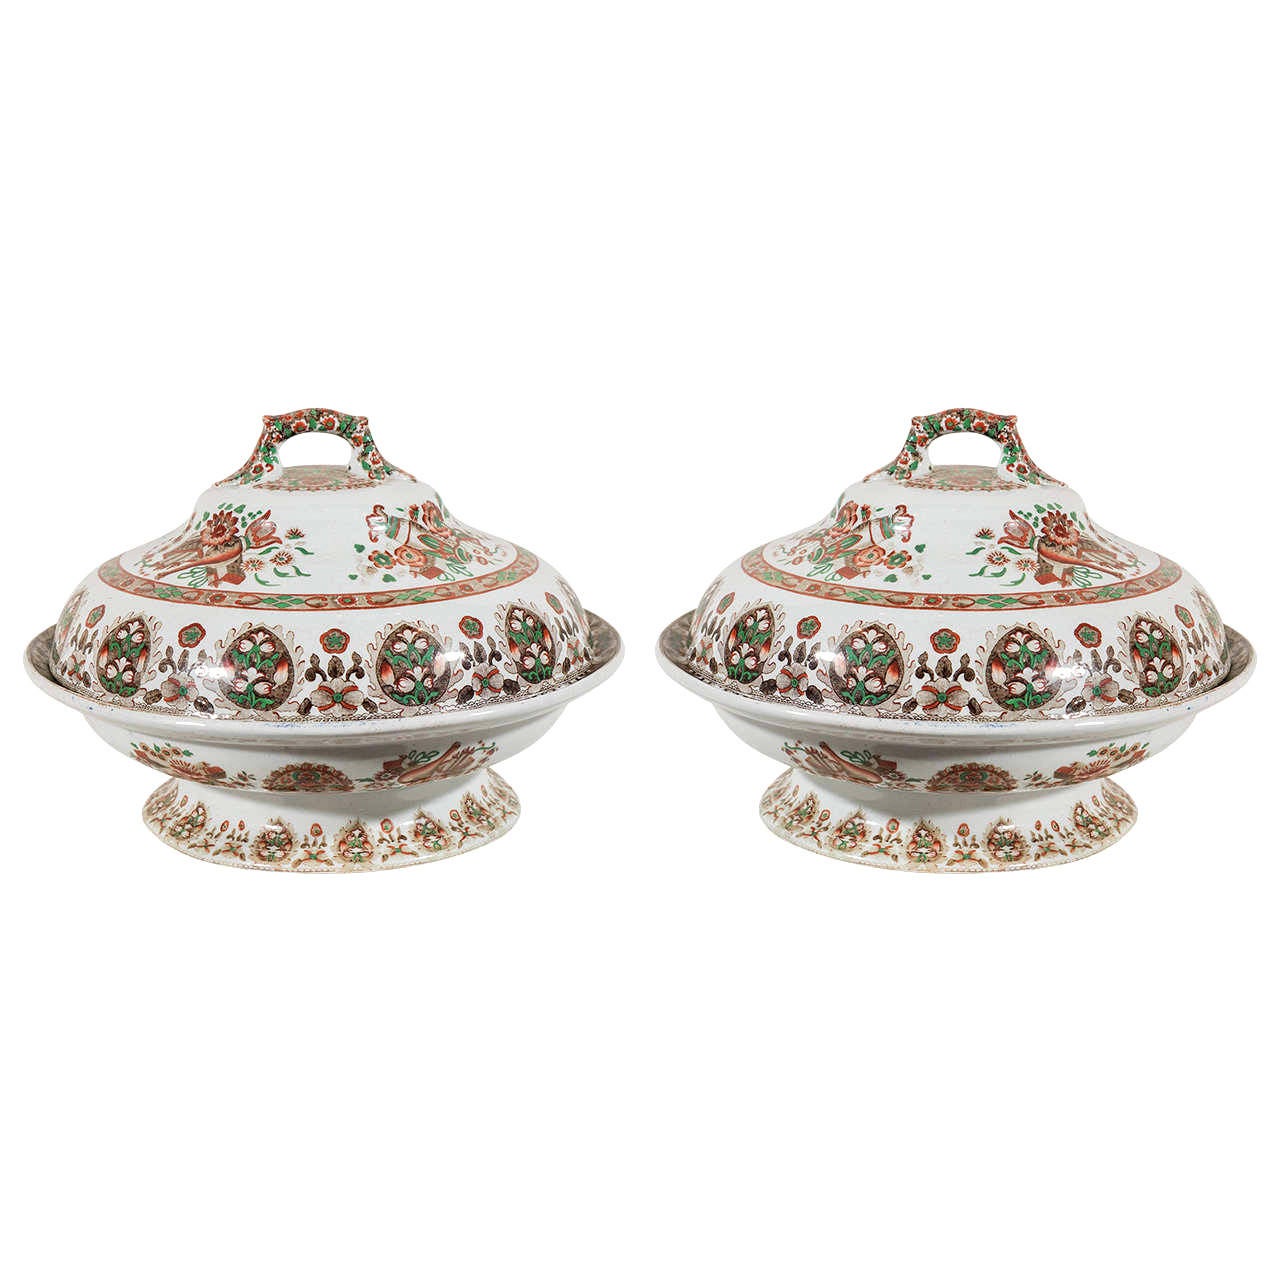 Nous avons le plaisir de vous proposer cette paire de soupières en porcelaine anglaise peinte d'un étonnant décor de chinoiserie. Ils ont été fabriqués par Copeland Spode vers 1840. La décoration de ces soupières est une combinaison de médaillons,